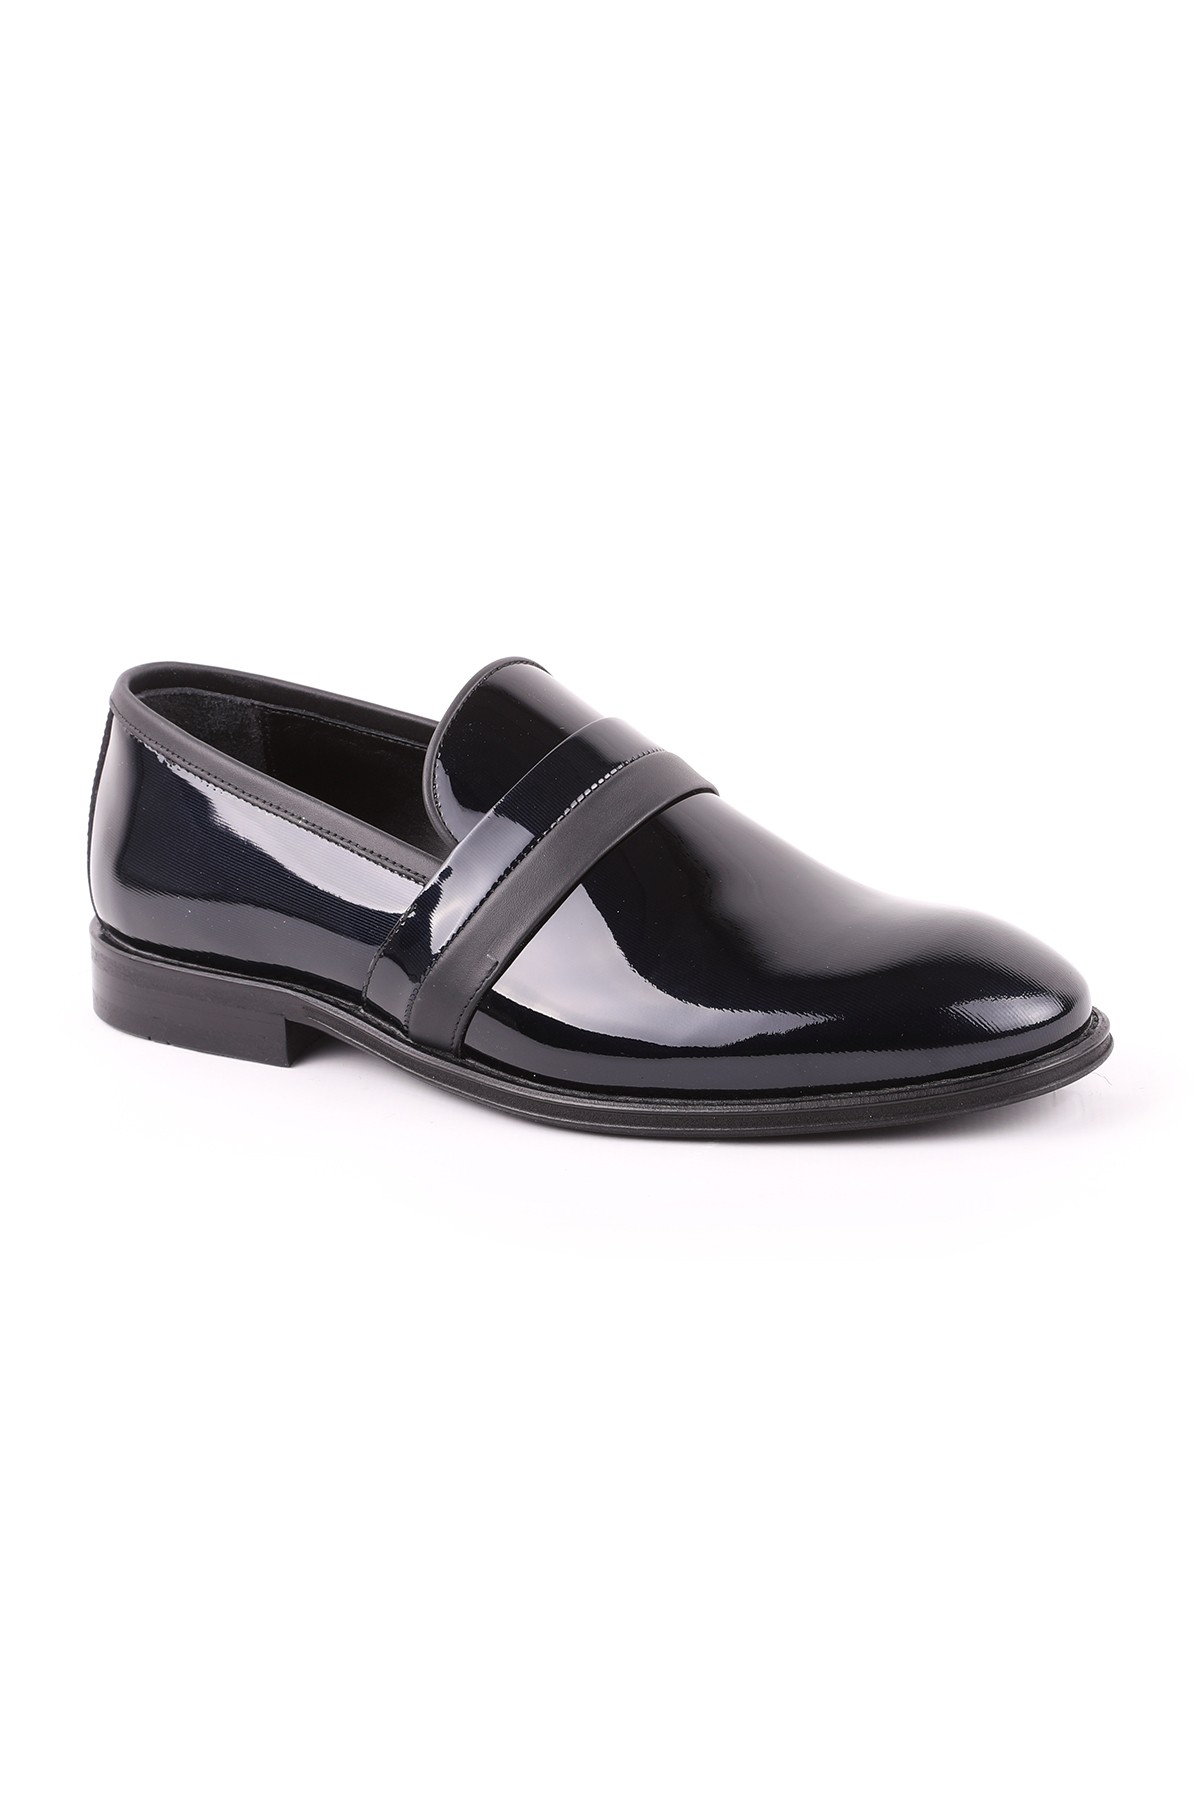 Libero L5178 Rugan Deri Erkek Klasik Ayakkabı SİYAH - Siyah